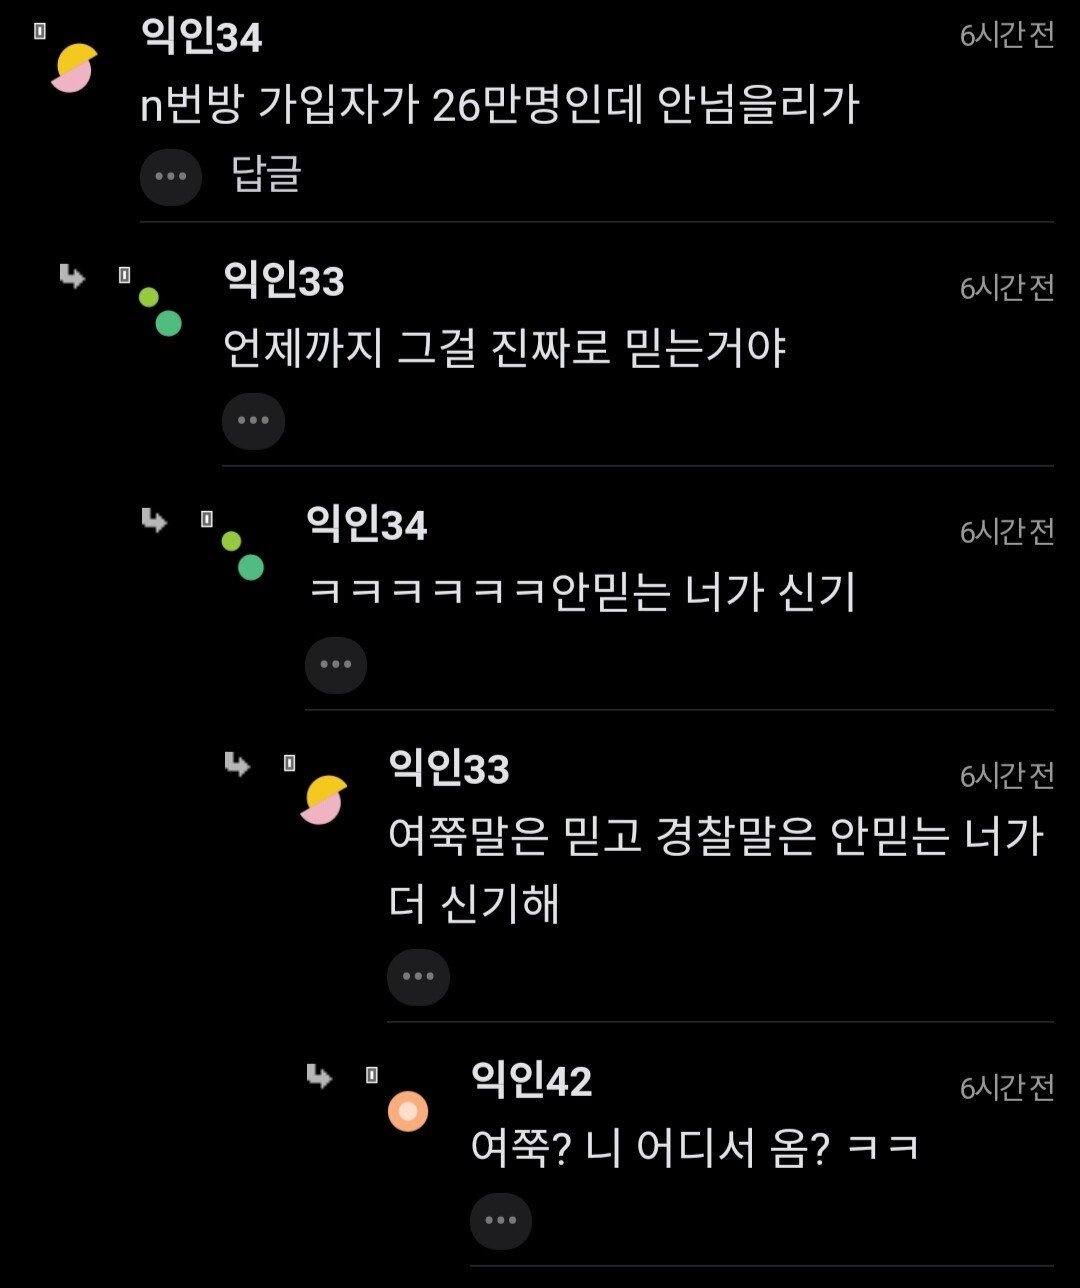 ""여성징병 청원 20만명 넘었대... 진짜 가는거야?"".jpg